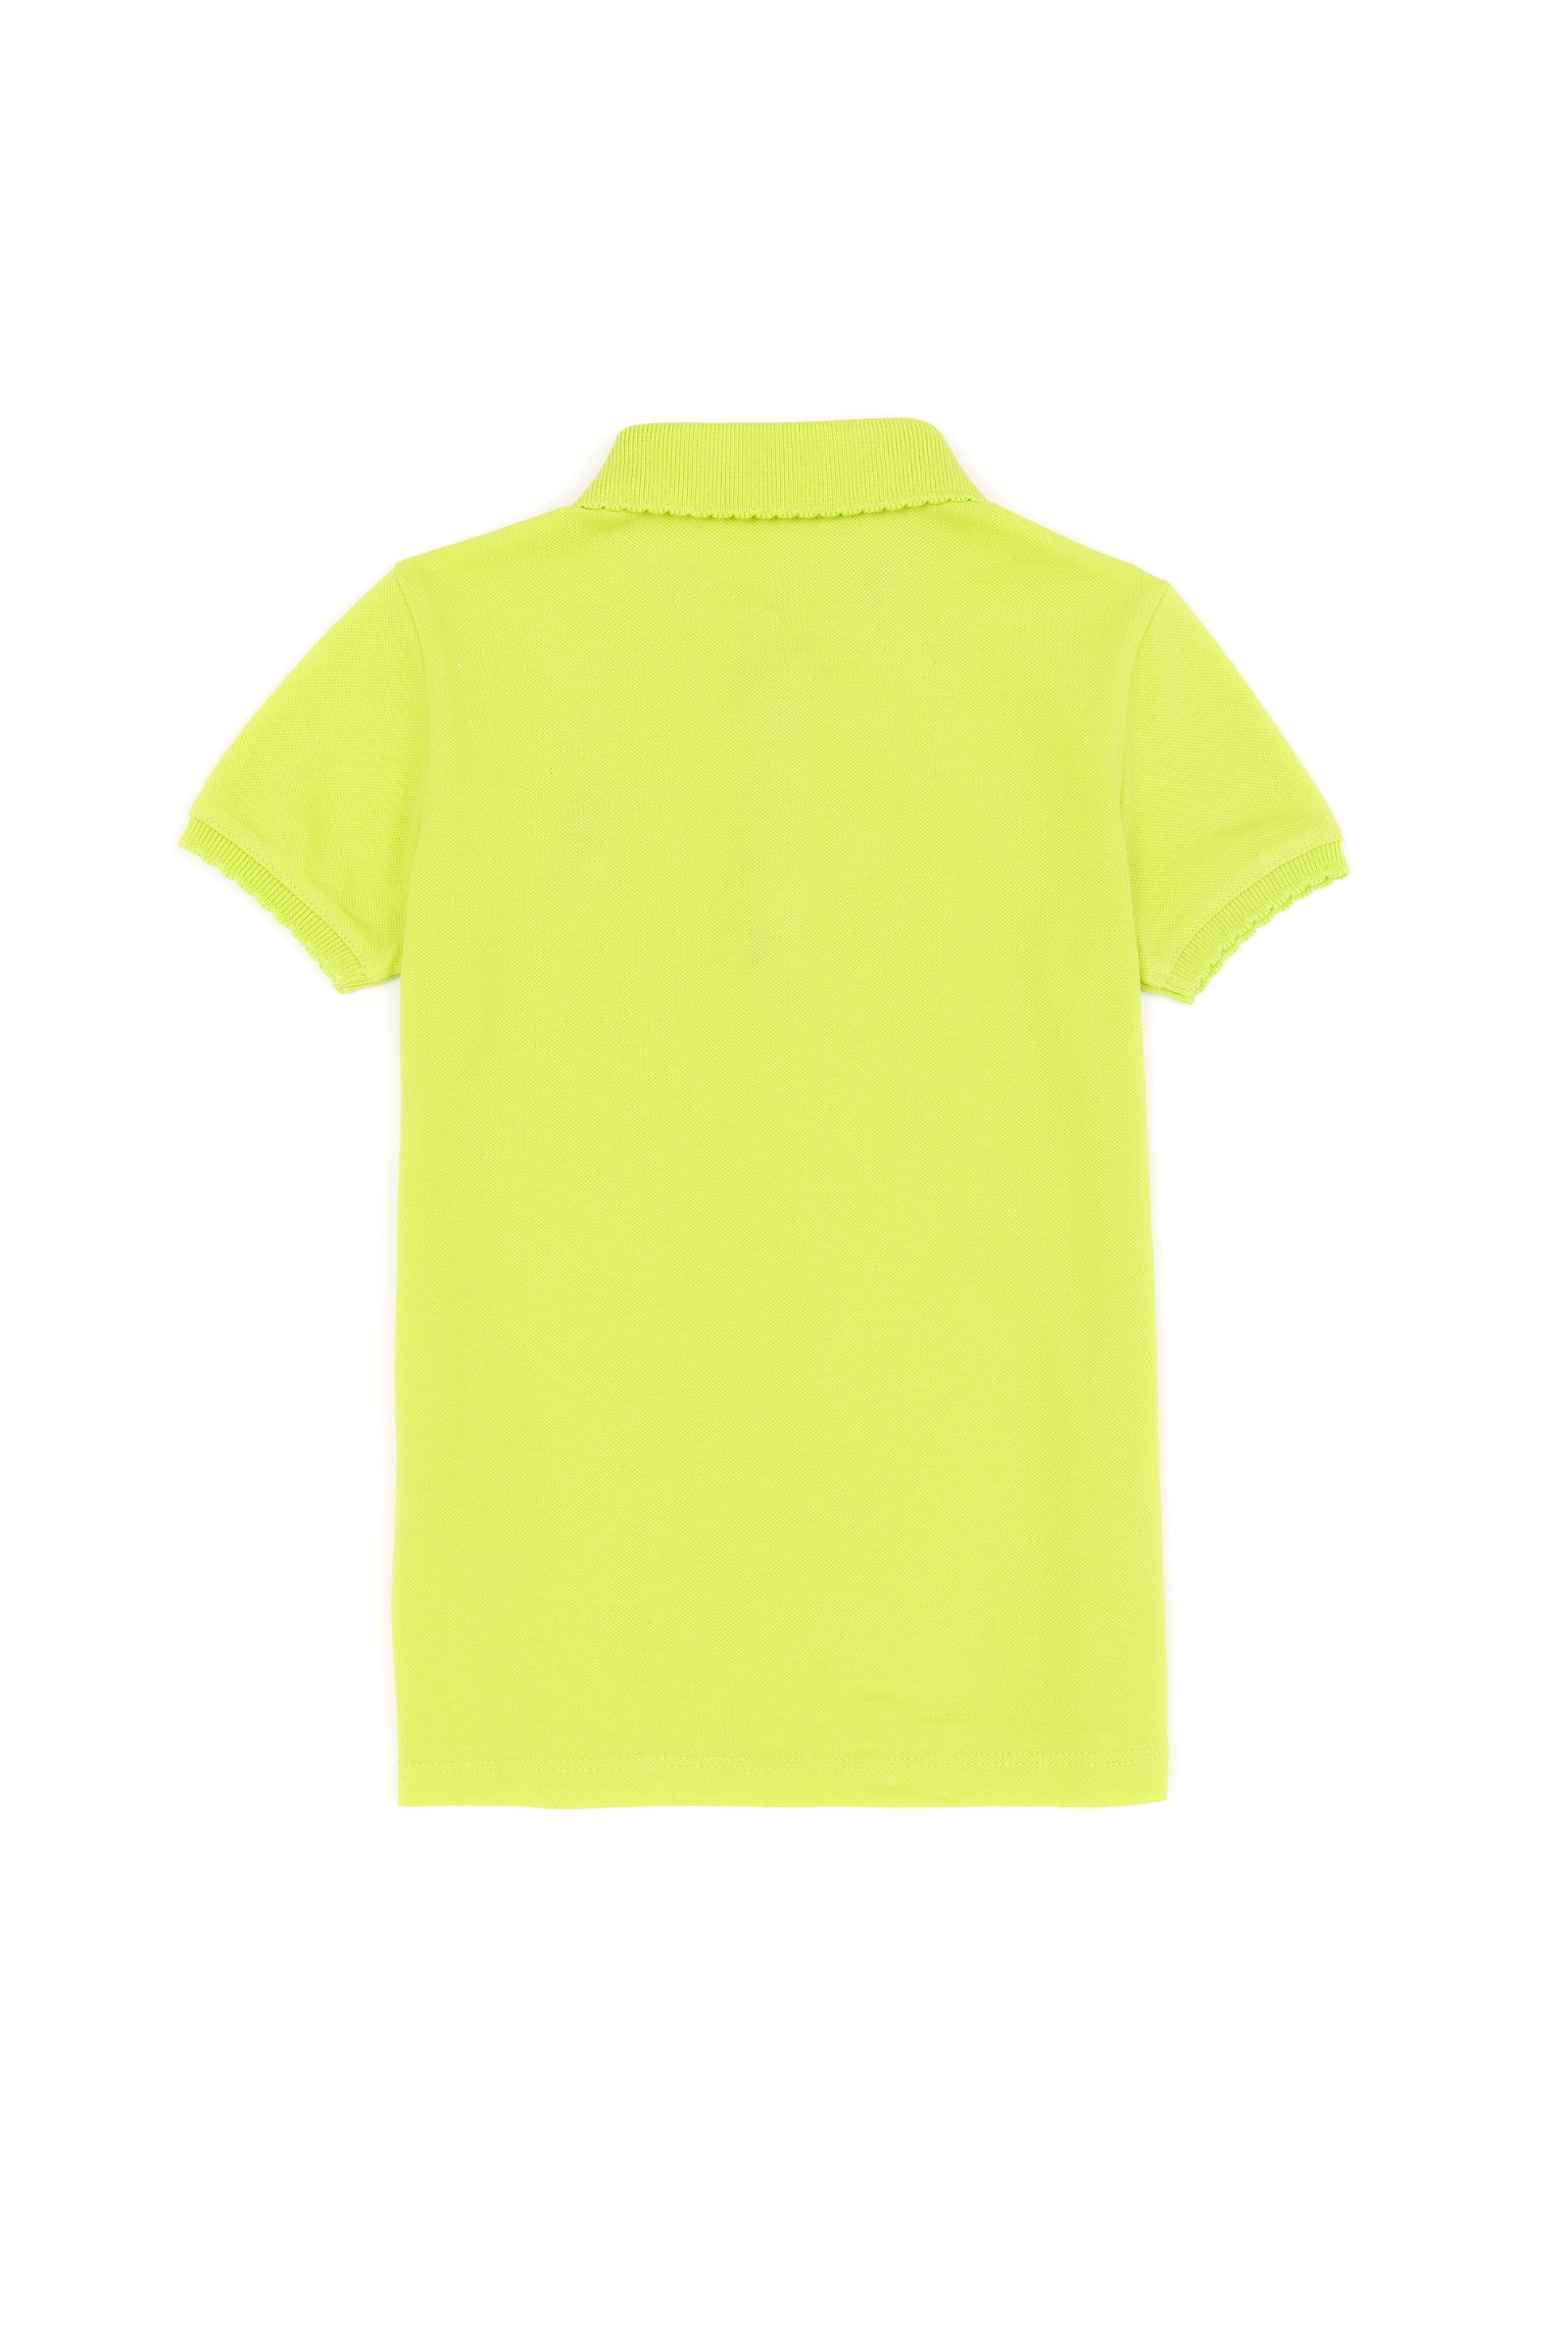 تی شرت  سبز پسته ای  استاندارد فیت  دخترانه یو اس پولو | US POLO ASSN